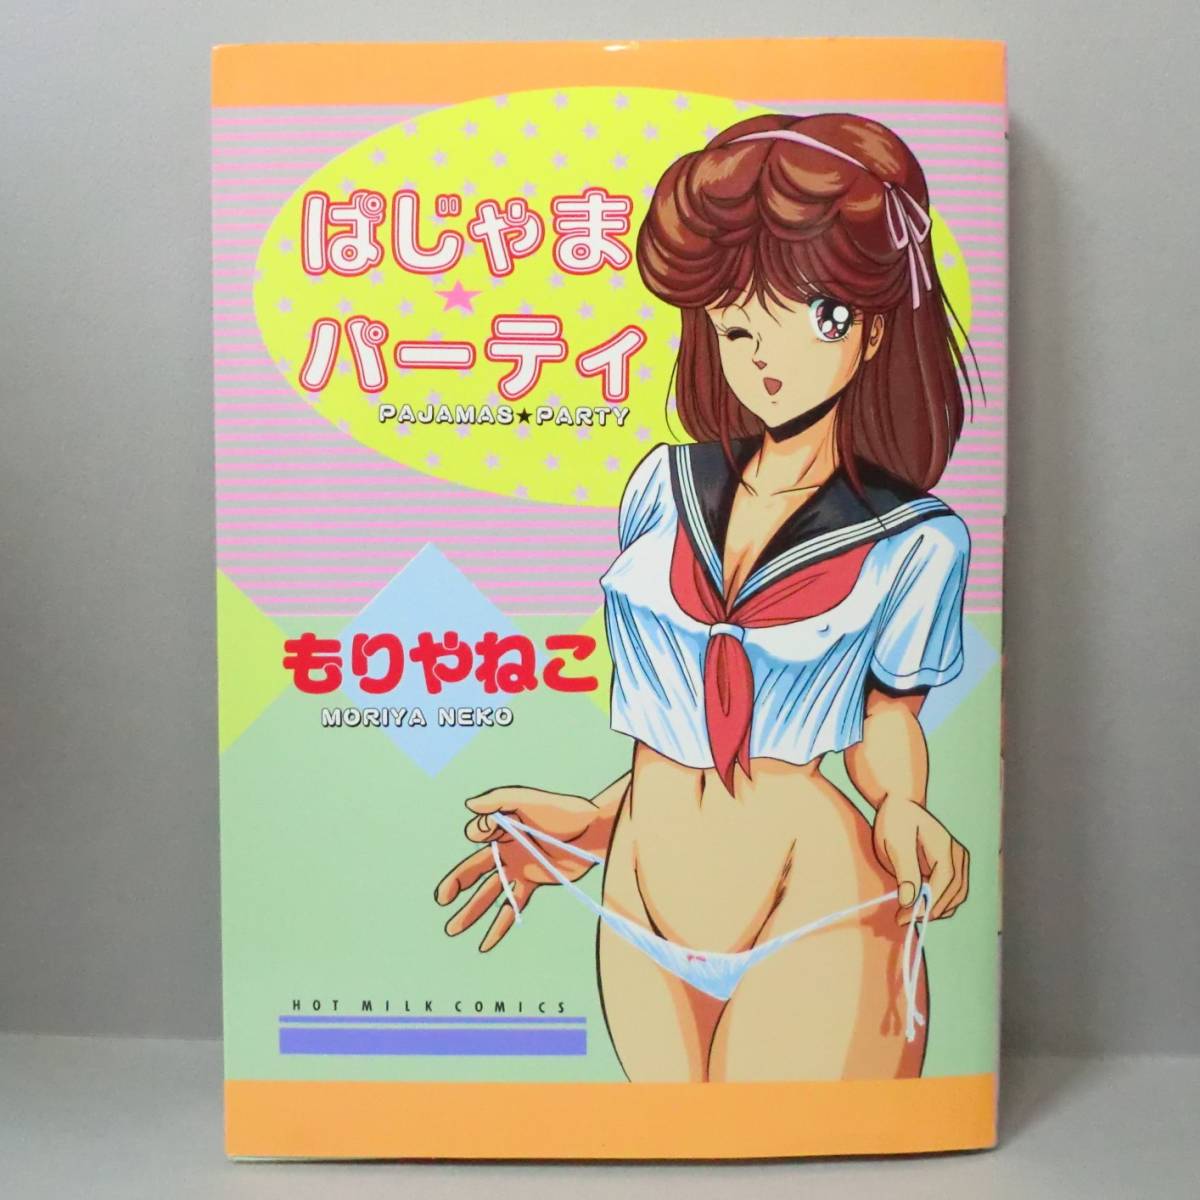 [ редкий манга ].... вечеринка . задний ..| Byakuya-Shobo HOTMILK COMIC 1988 год no. 5. прекрасный товар A5 штамп ( относящийся > манга hot молоко ....